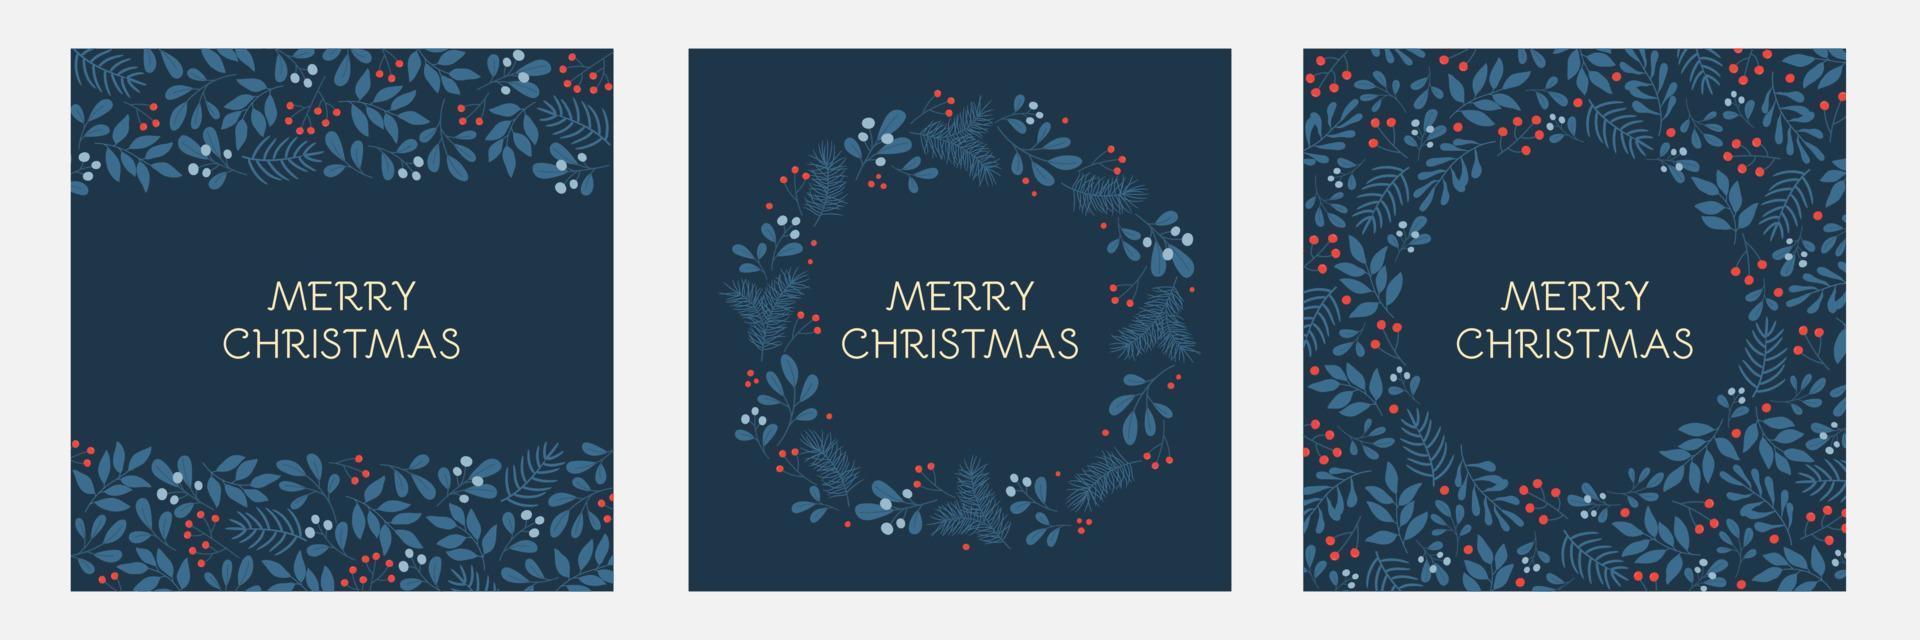 conjunto de tarjetas de felicitación navideñas con marcos florales y adornos navideños. patrones de ramitas de invierno en colores azules. vector